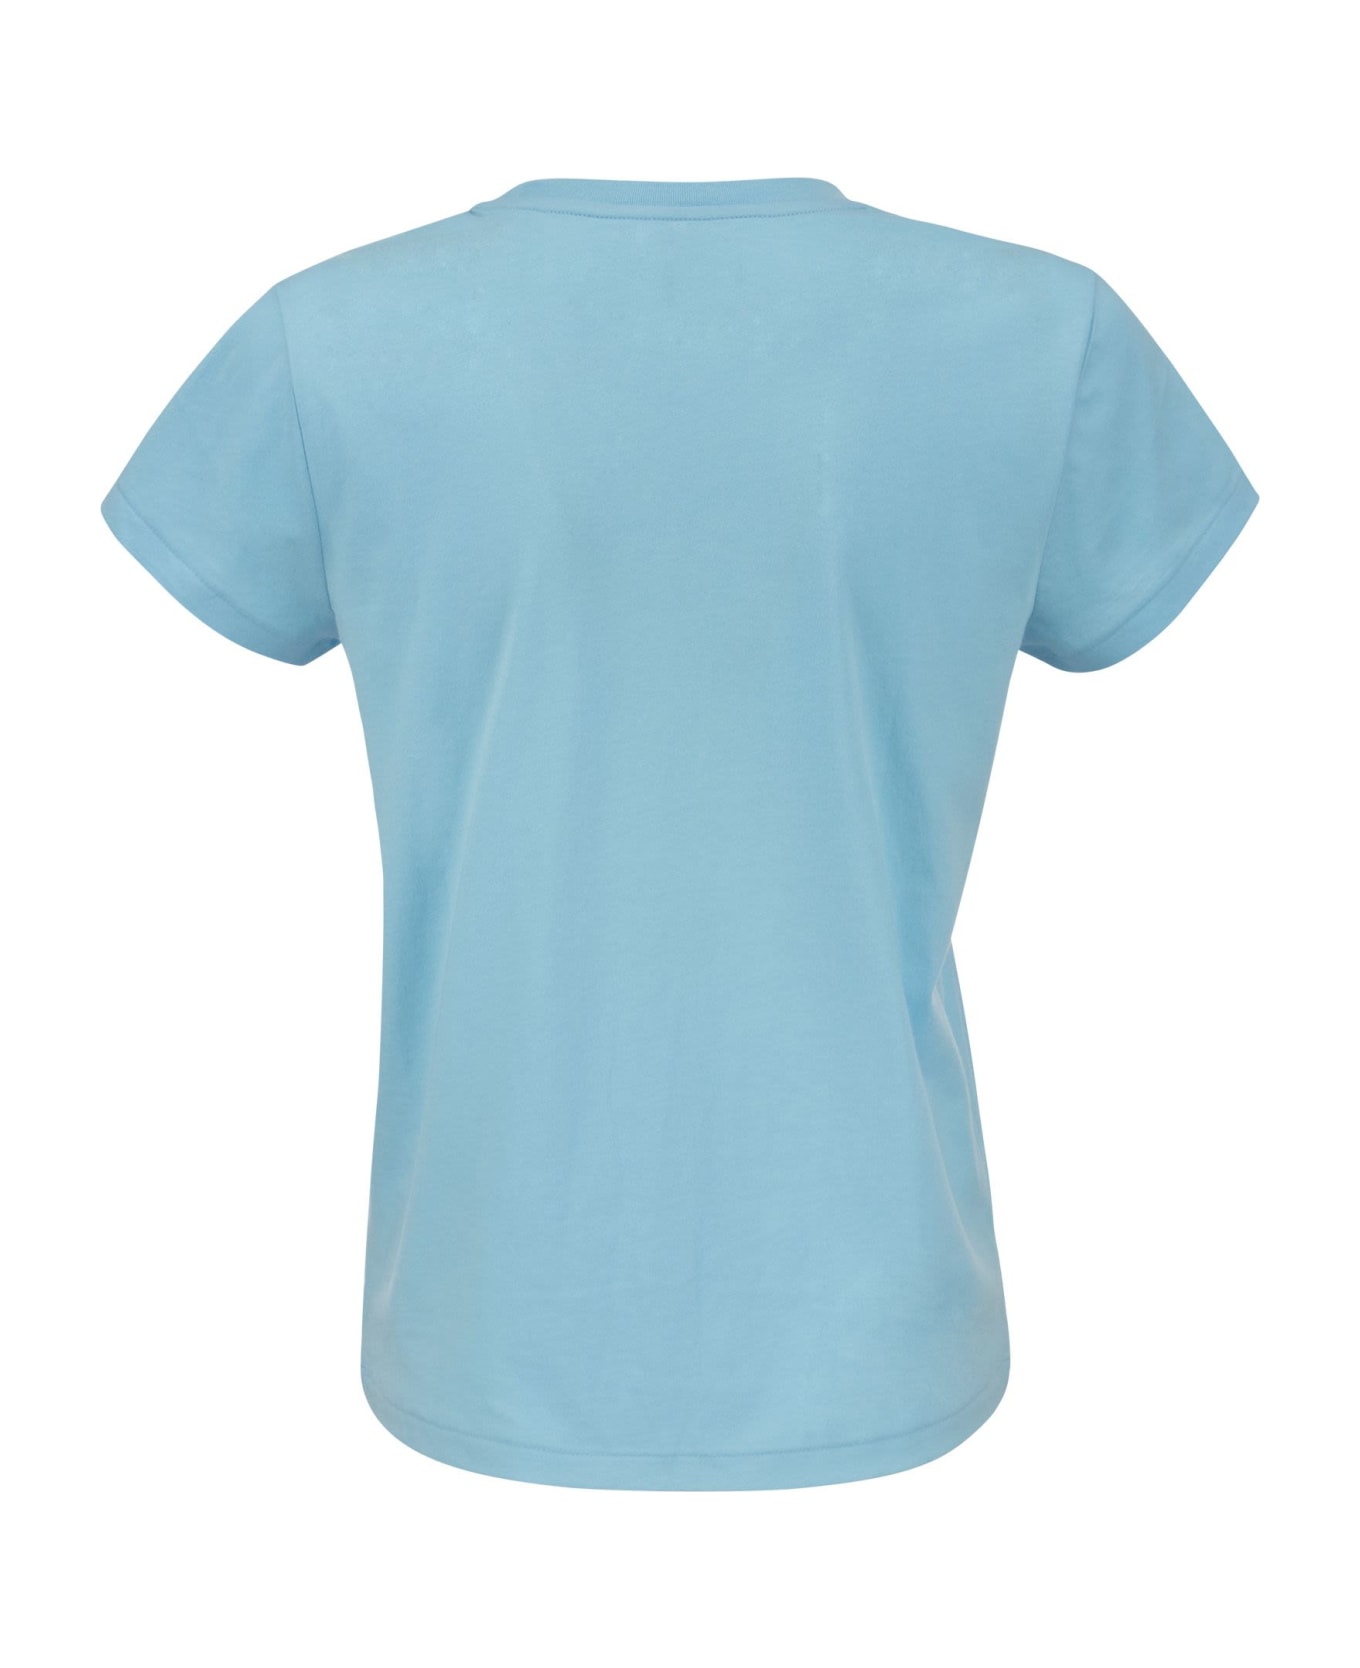 Polo Ralph Lauren Crewneck Cotton T-shirt - Light Blue